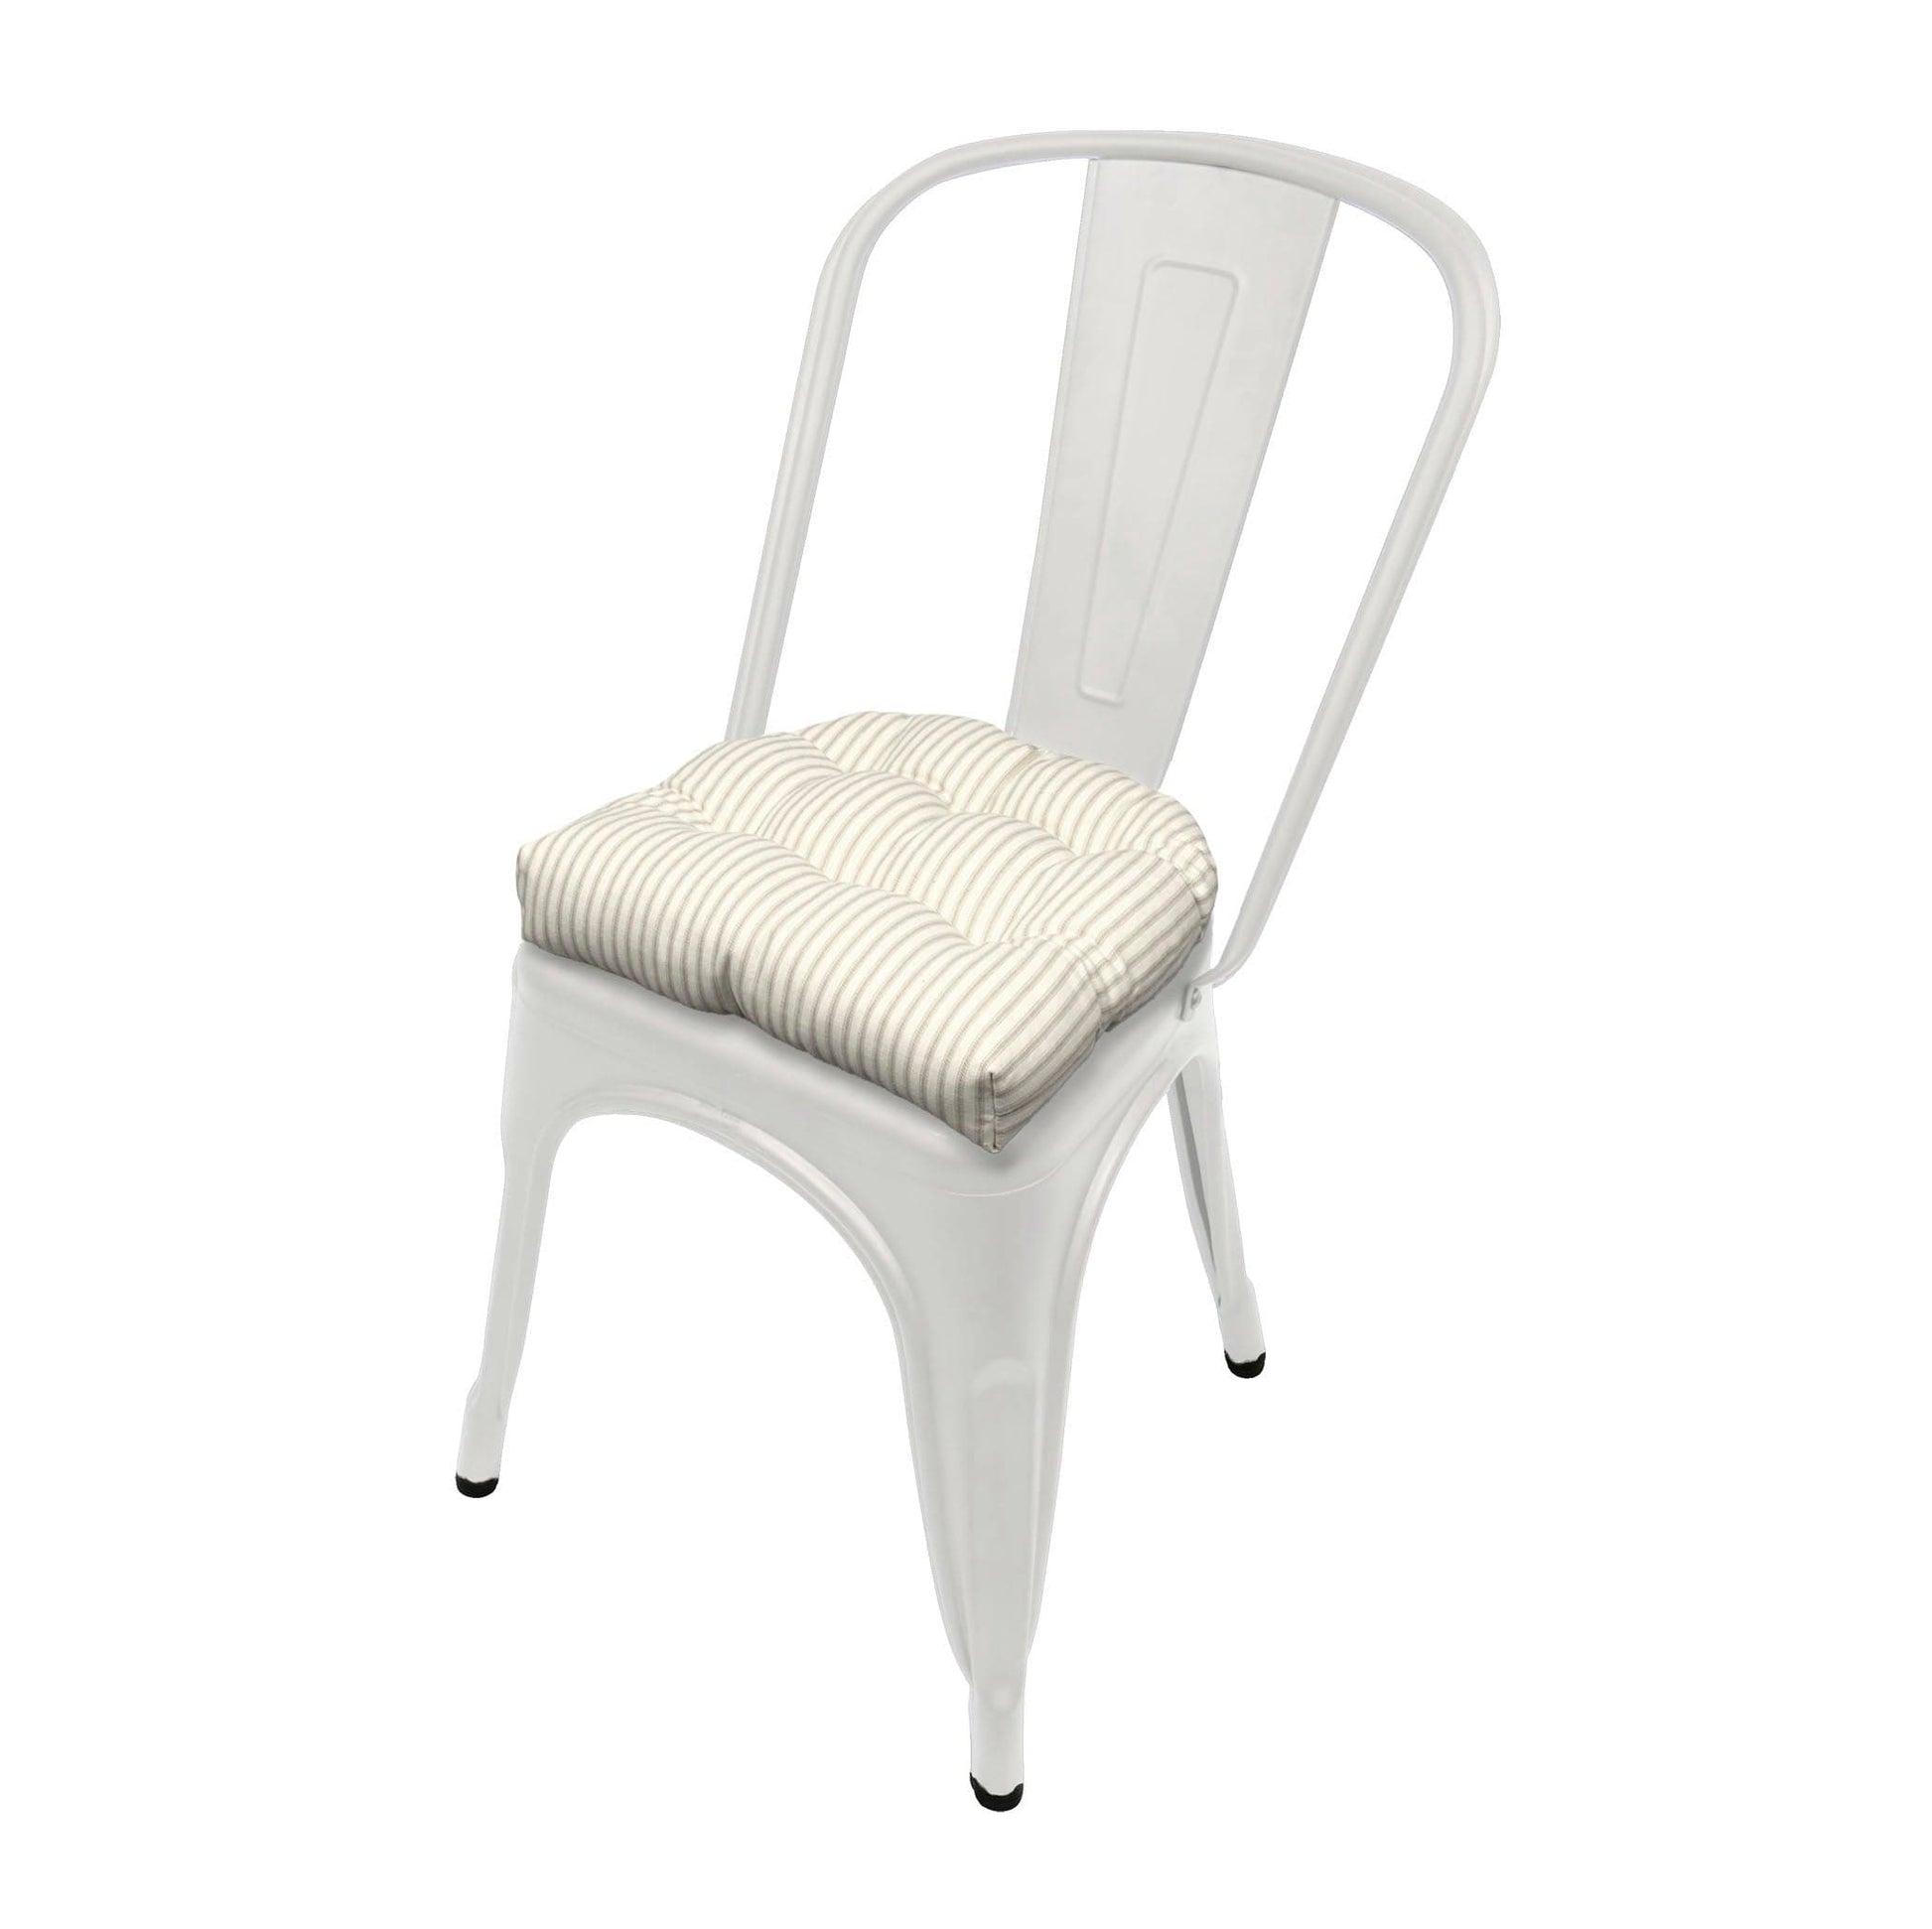 Ticking Stripe Natural Industrial Chair Cushion - Latex Foam Fill - Barnett Home Decor 